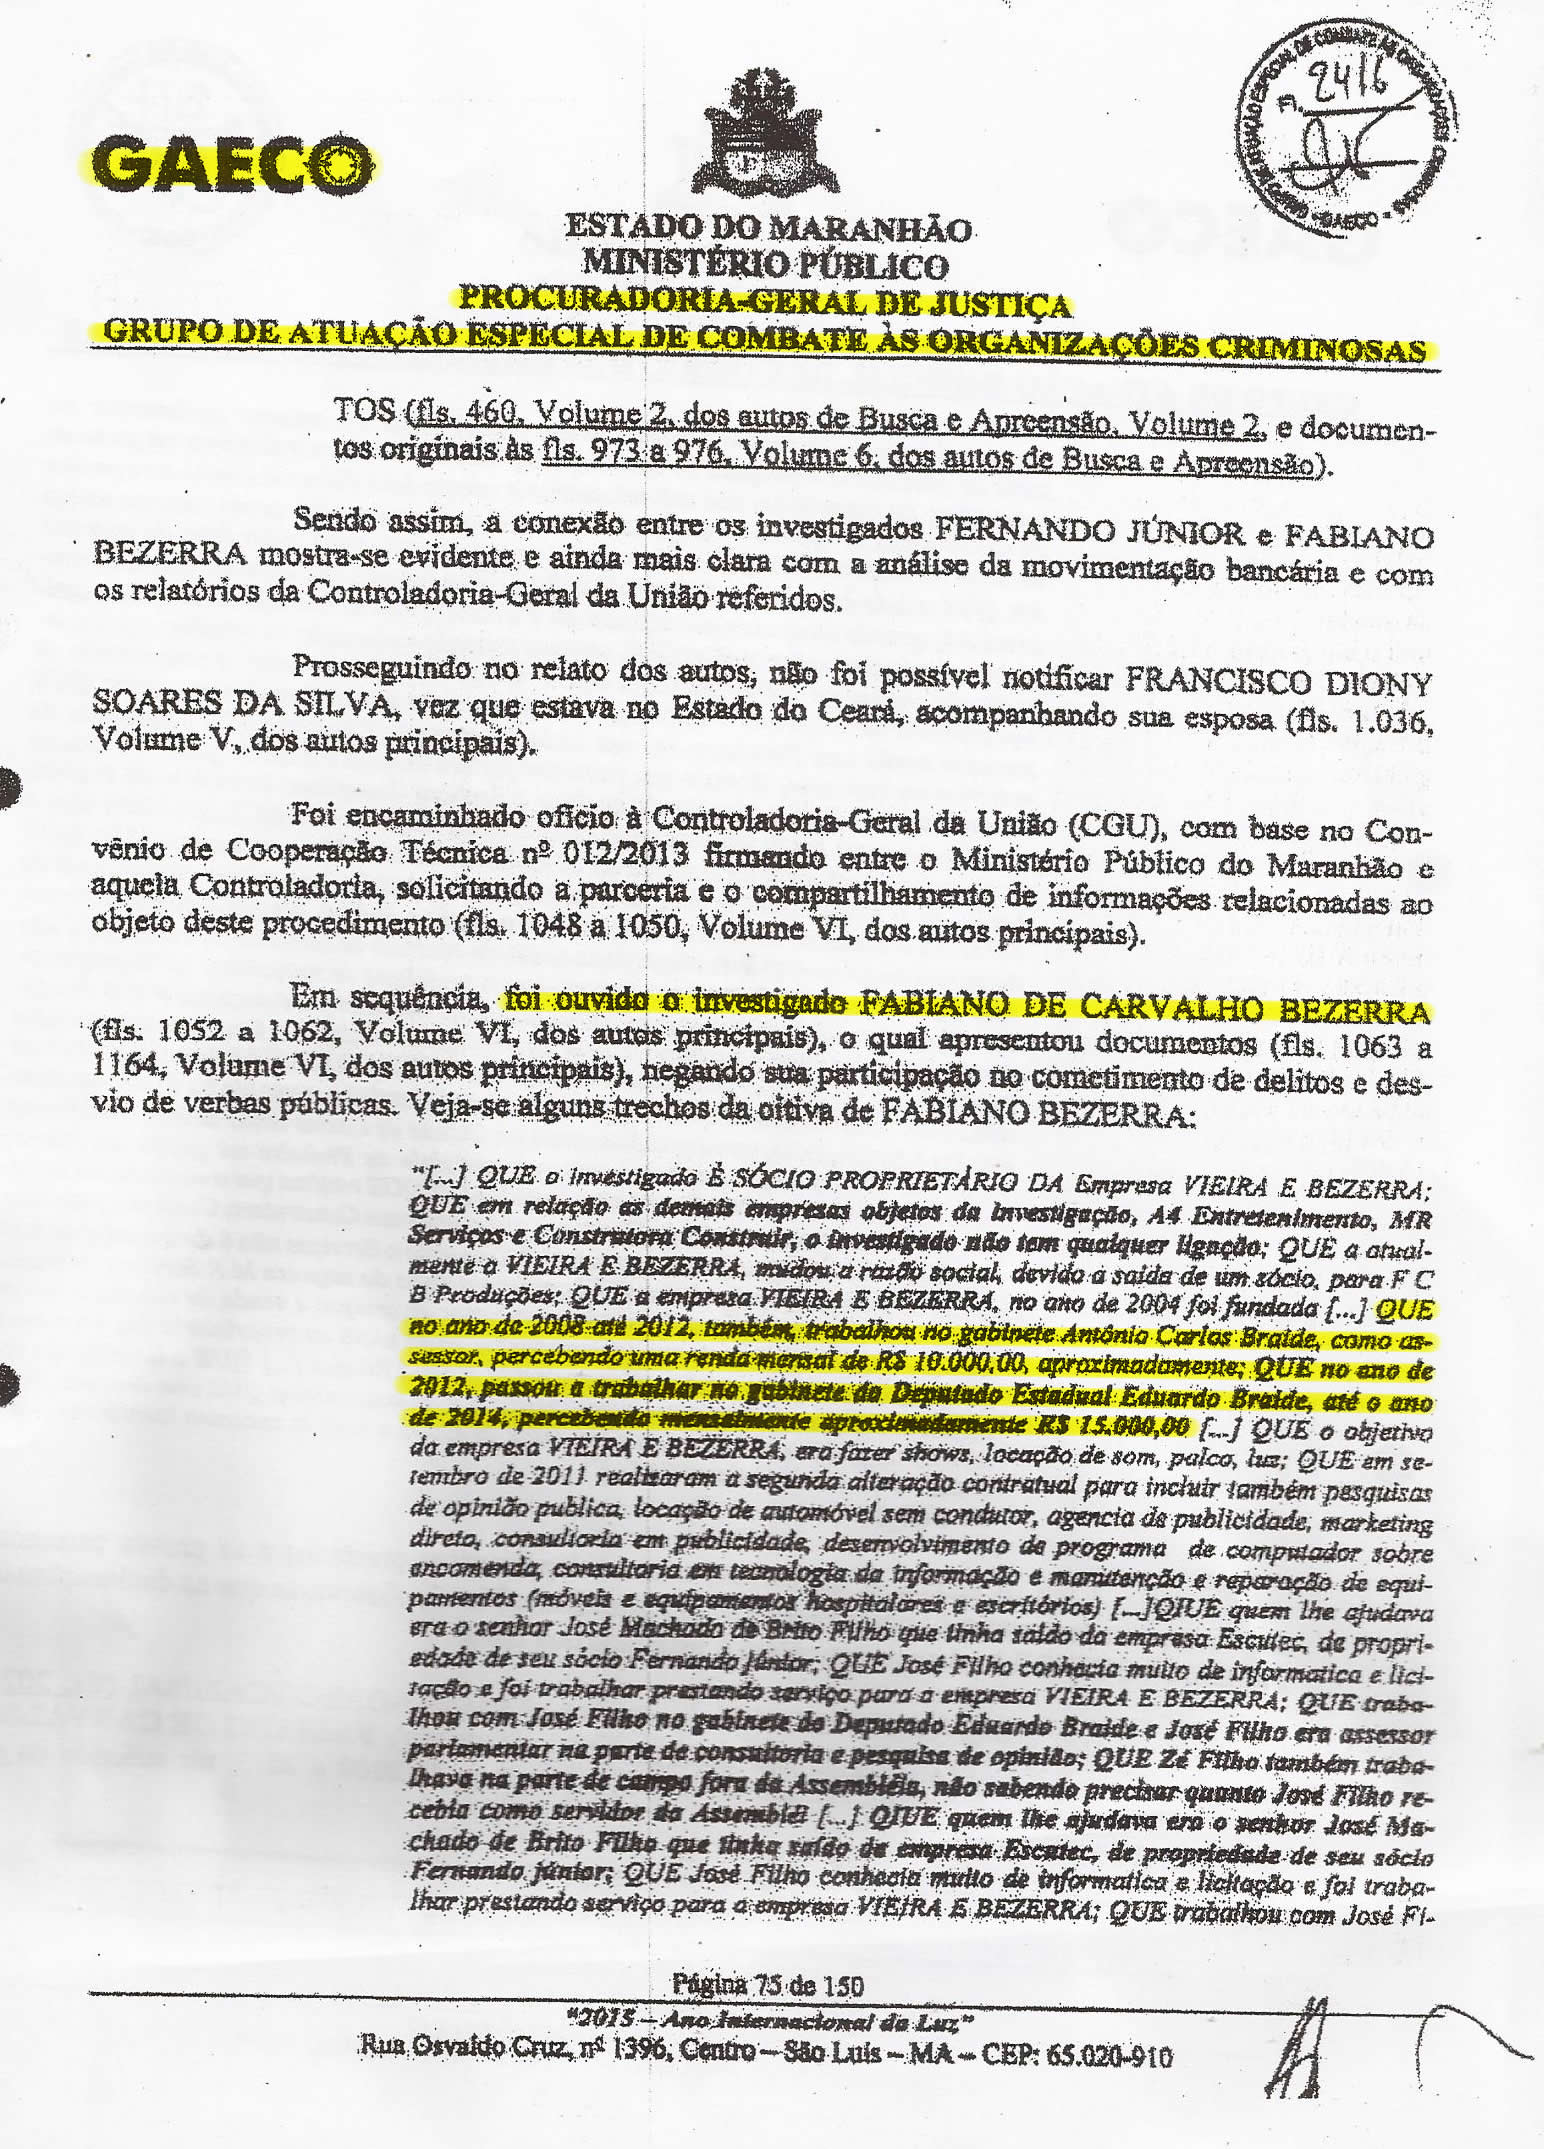 Folha 75 do PIC Gaeco mostra depoimento de Fabiano Bezerra confessando sinecura nos gabinetes de Carlos e Eduardo Braide, entre 2008 e 2014